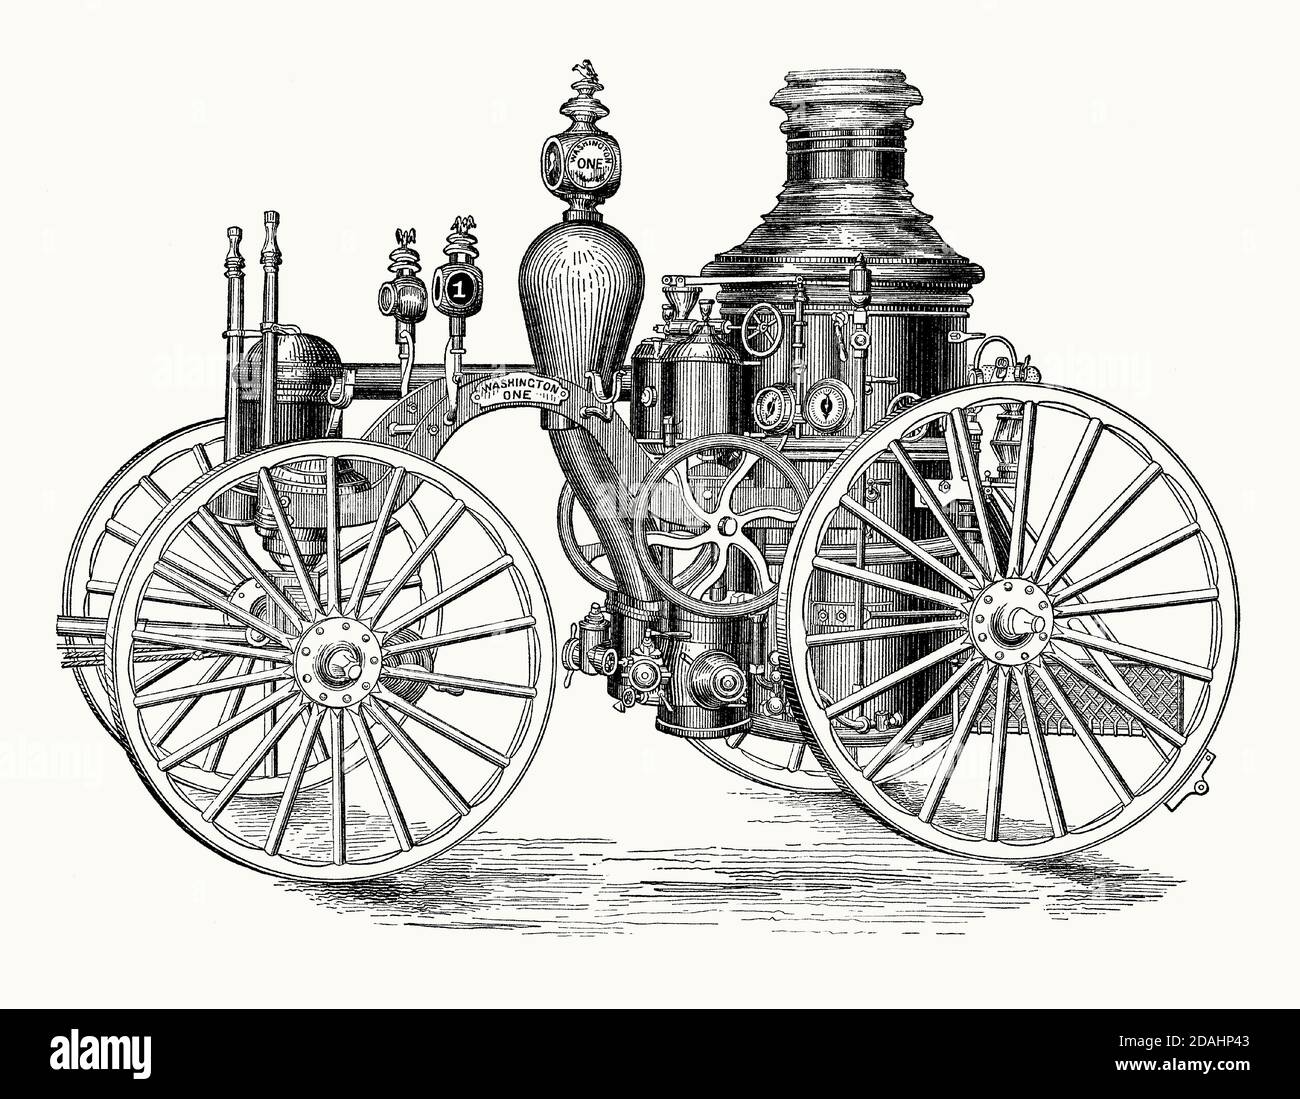 Une ancienne gravure d'un moteur d'incendie à vapeur. Il est issu d'un livre victorien d'ingénierie mécanique des années 1880. Cette machine, « Washington One », a été utilisée par les pompiers de Brooklyn, New York, États-Unis, dans la dernière partie des années 1800. Des moteurs d'incendie de pompe à vapeur ont été utilisés des années 1840 jusqu'au début du XXe siècle pour pomper l'eau vers les tuyaux d'incendie ont mis hors feux. Les grands services d'incendie urbains investiraient dans des brigades d'incendie, ou entreprises de moteurs, pour s'attaquer aux incendies. La machine à vapeur serait un cheval. Les chaudières verticales à allumage rapide, bien que lourdes, étaient des pièces d'appareil efficaces. Banque D'Images